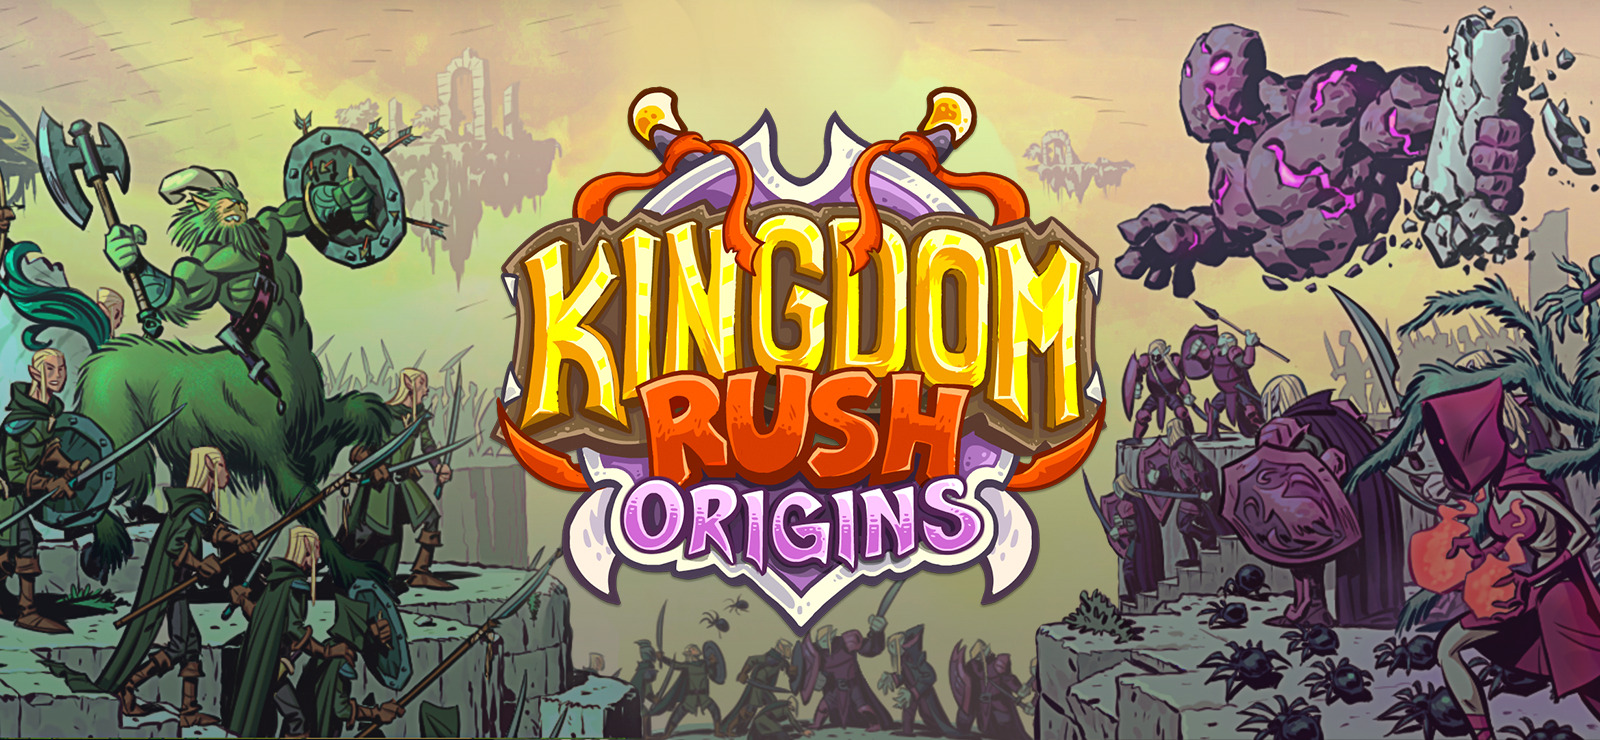 Steam version kingdom rush фото 84